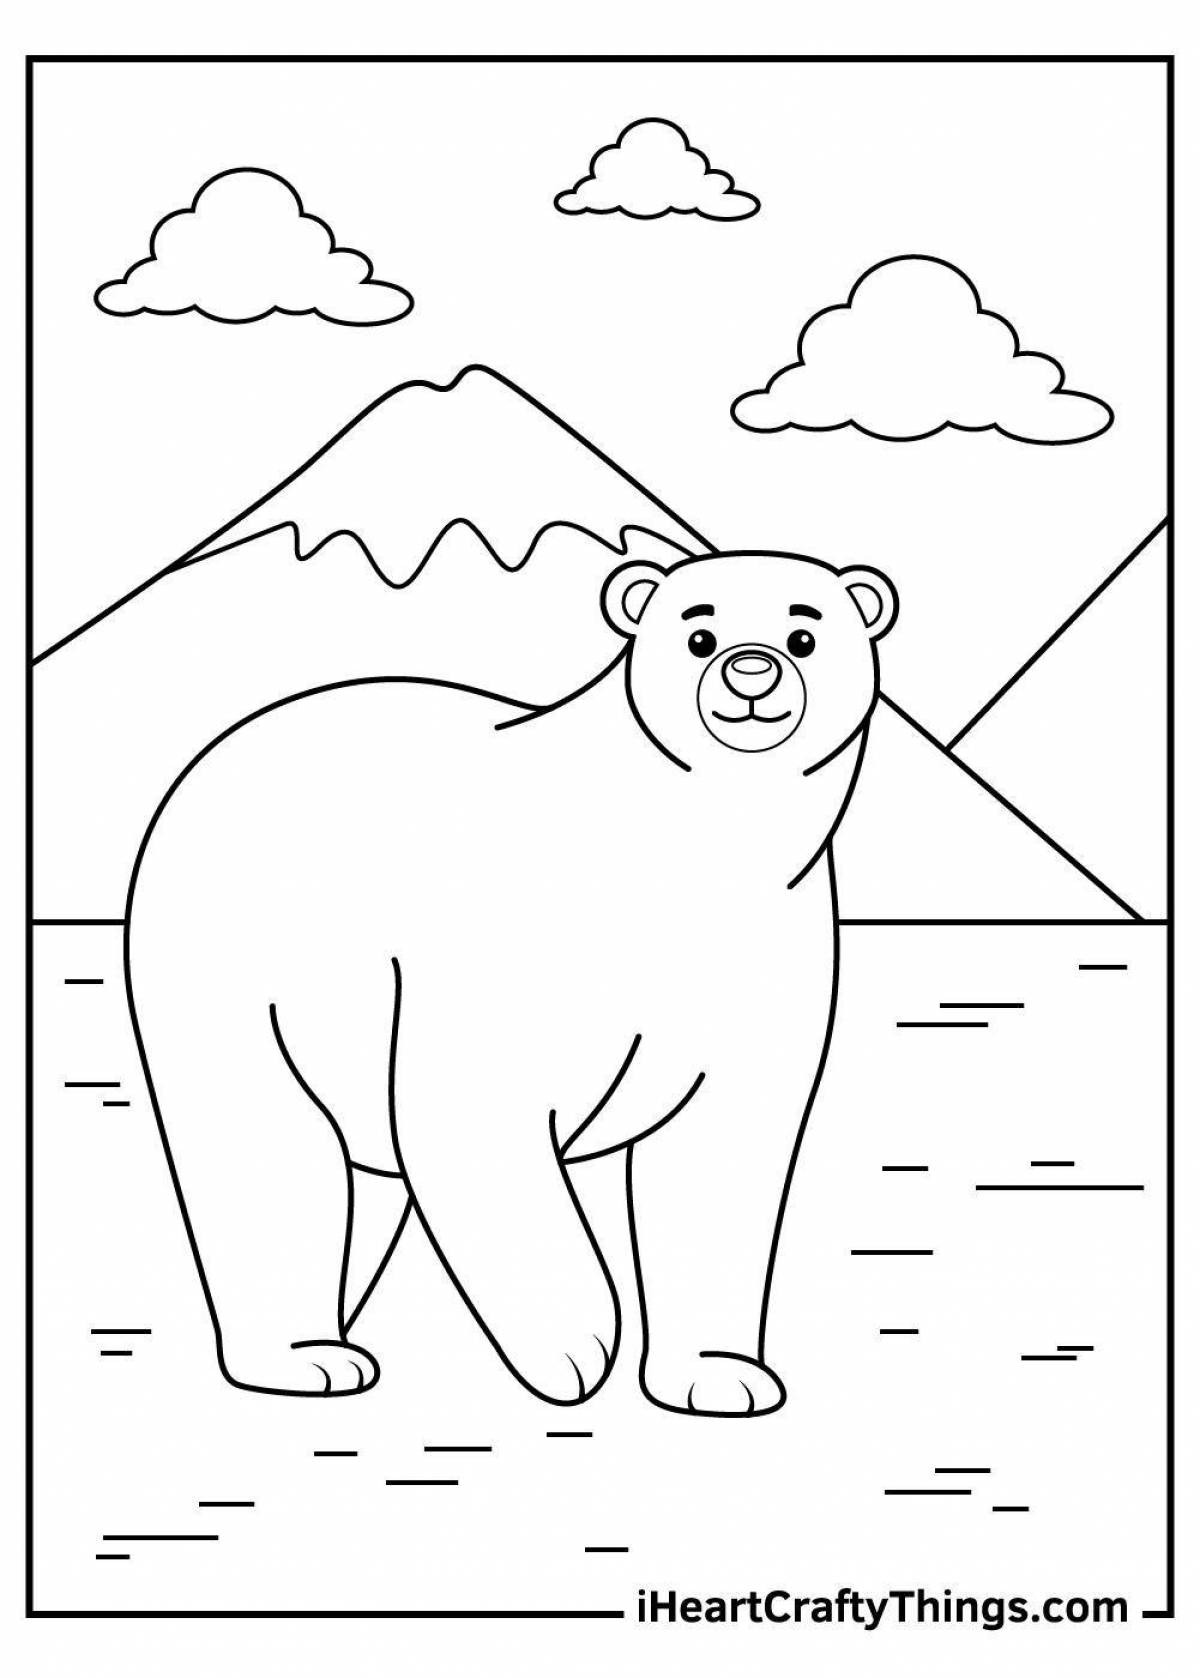 Раскраска радостный белый медведь для детей 2-3 лет